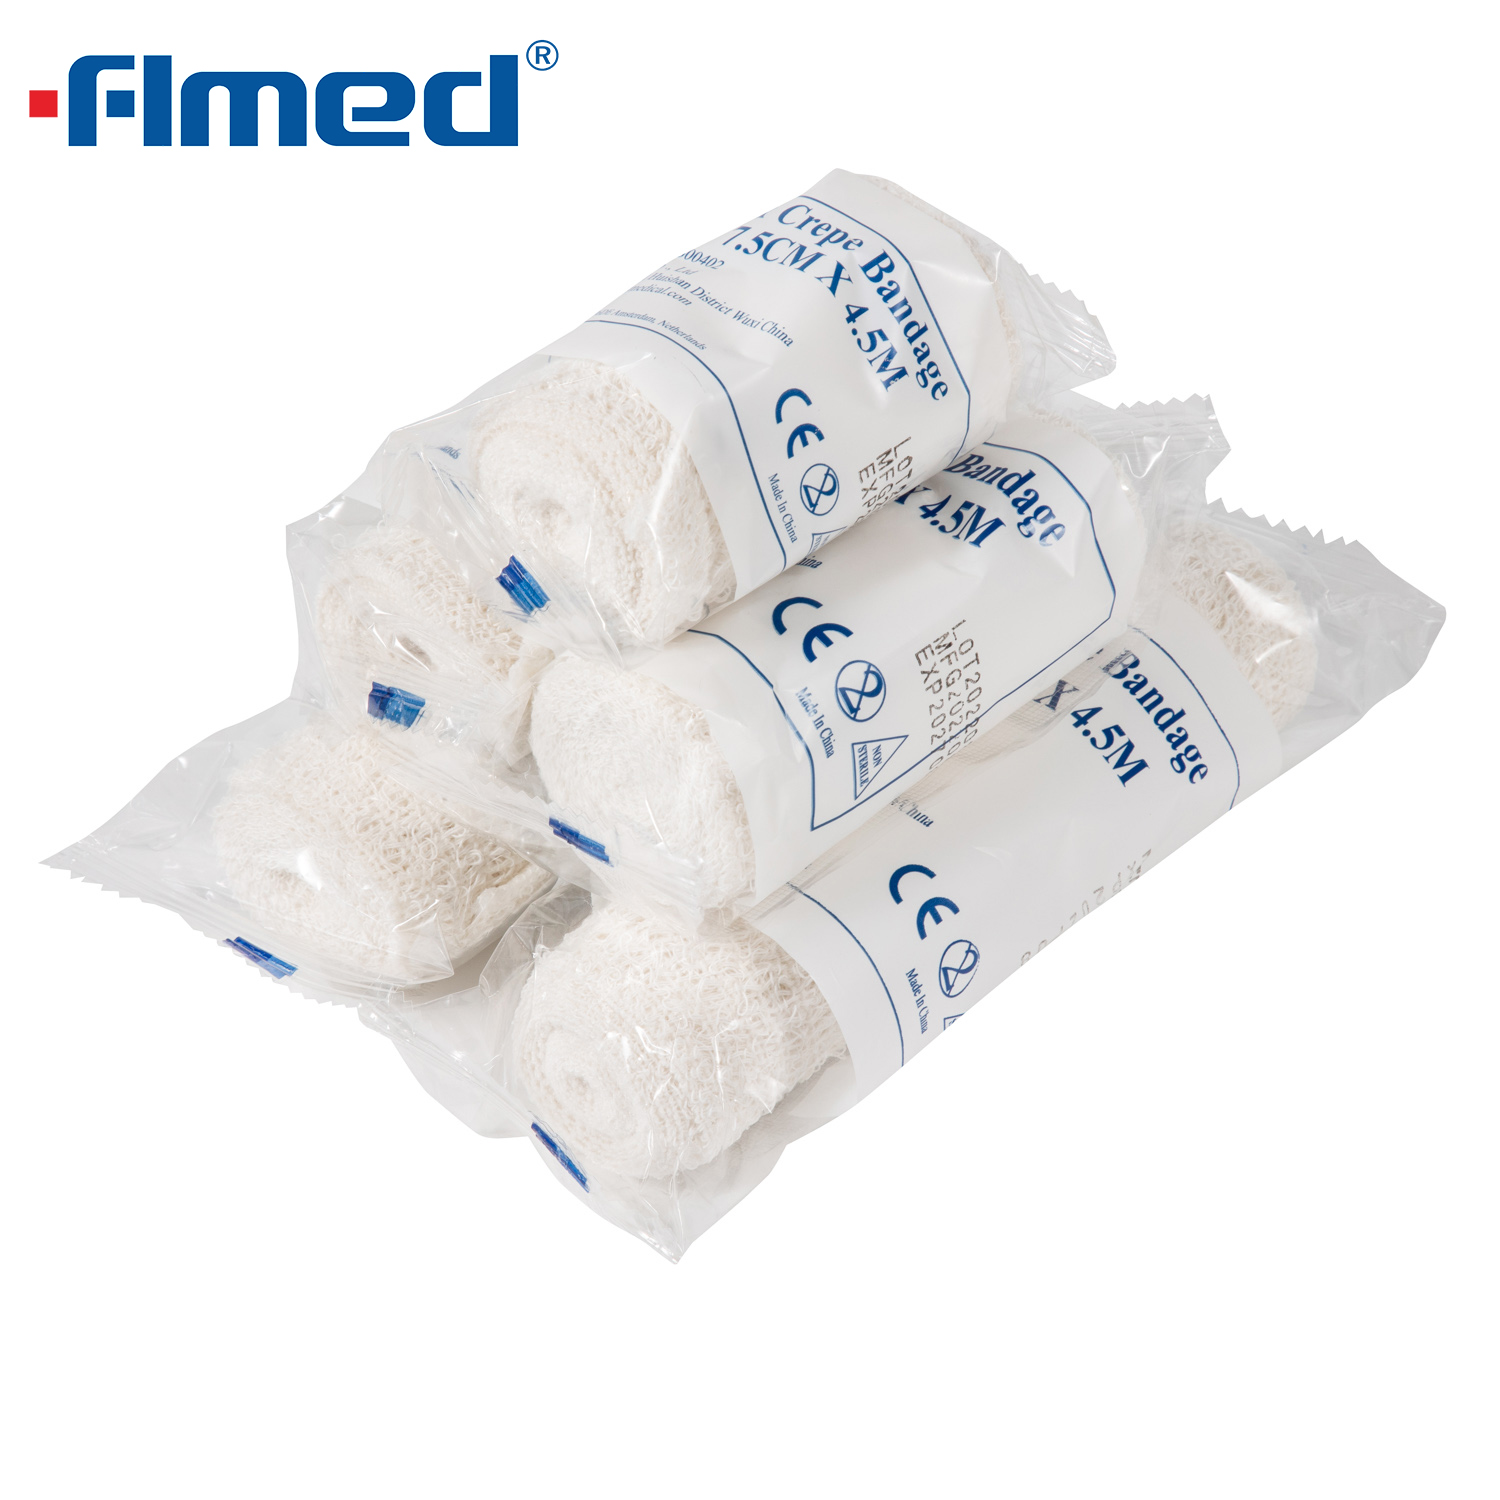 Vendaje elástico de algodón vendaje elástico de crepe para aderezo para el cuidado de heridas